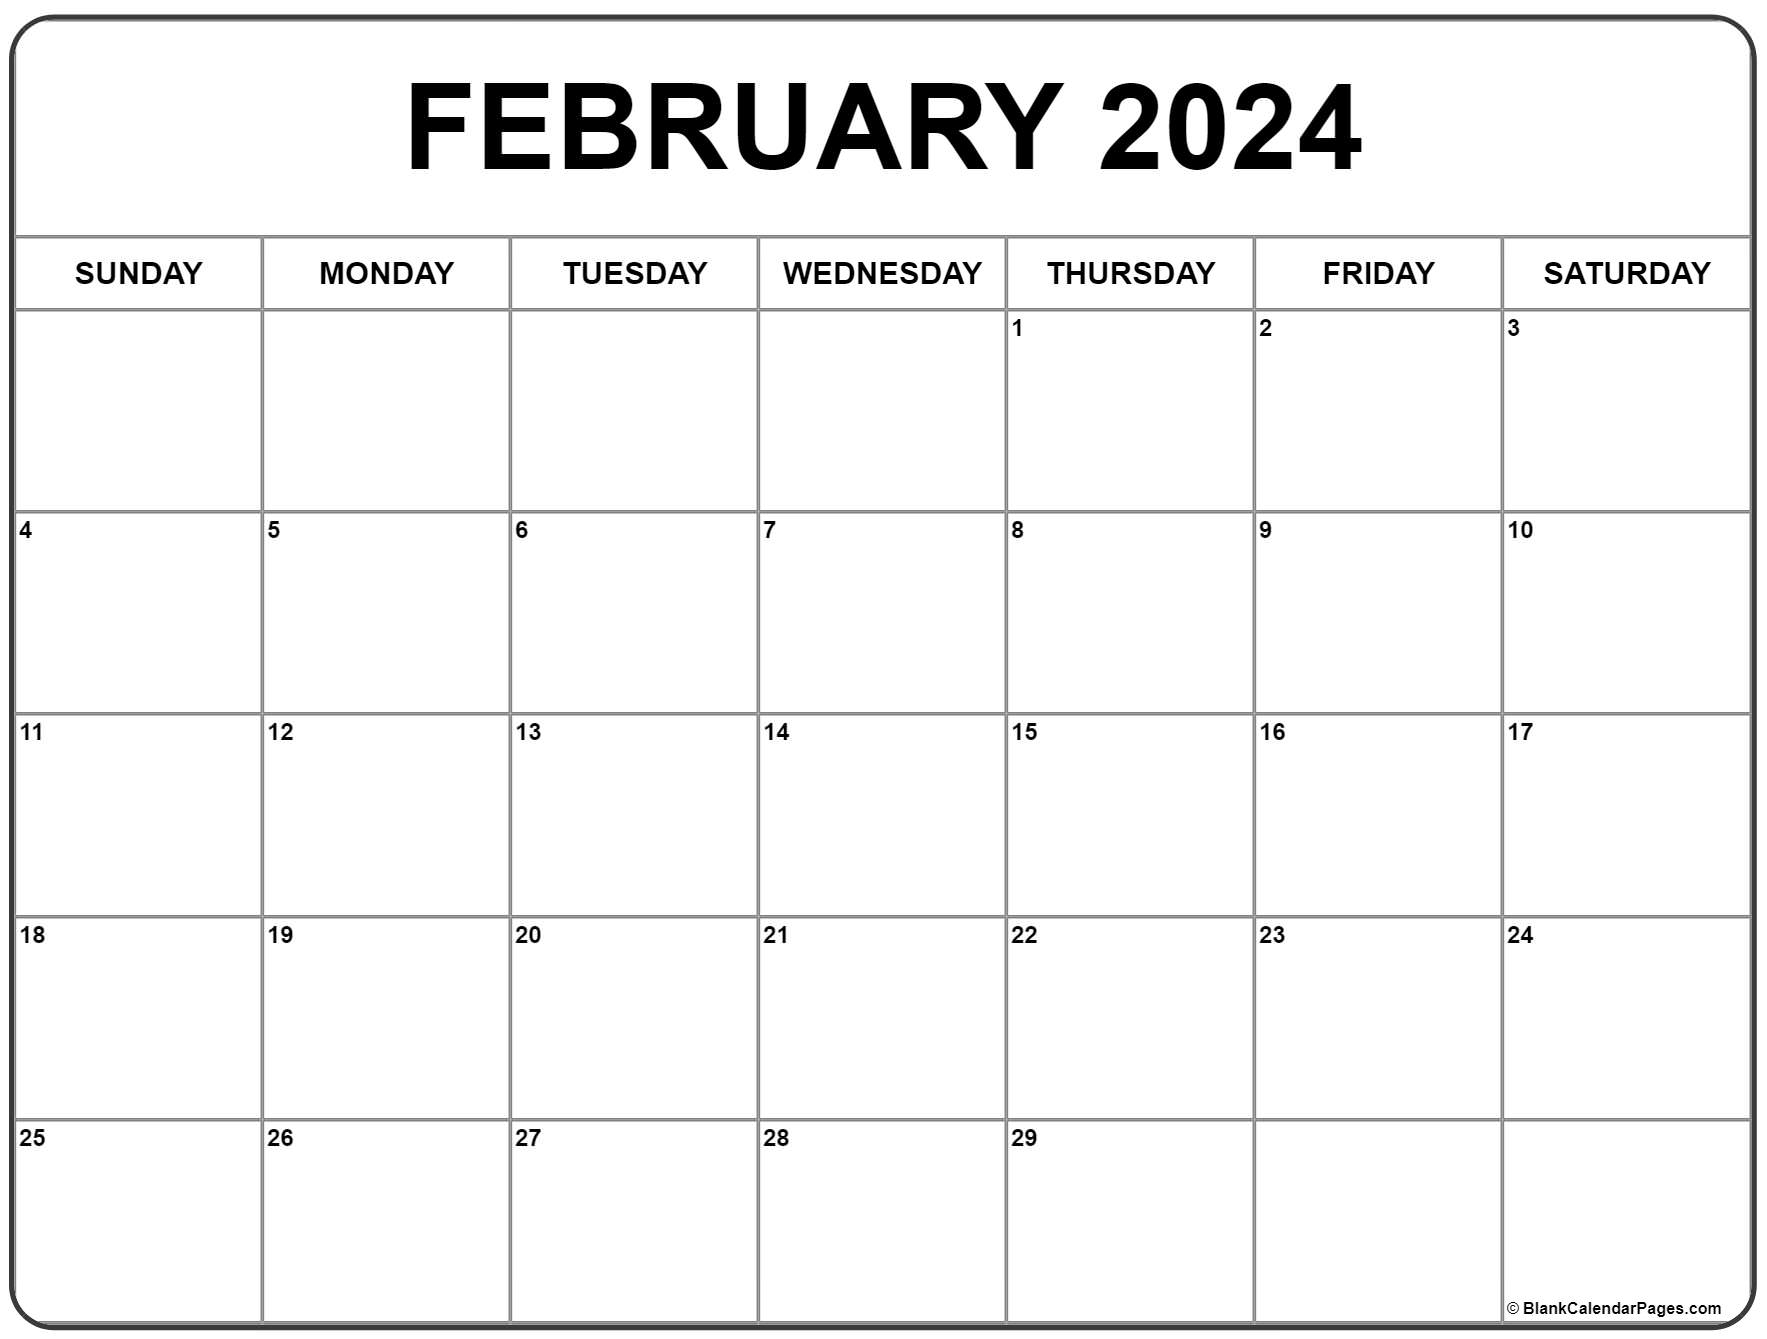 February 2024 Calendar | Free Printable Calendar for Free Printable Calendar Feb 2024